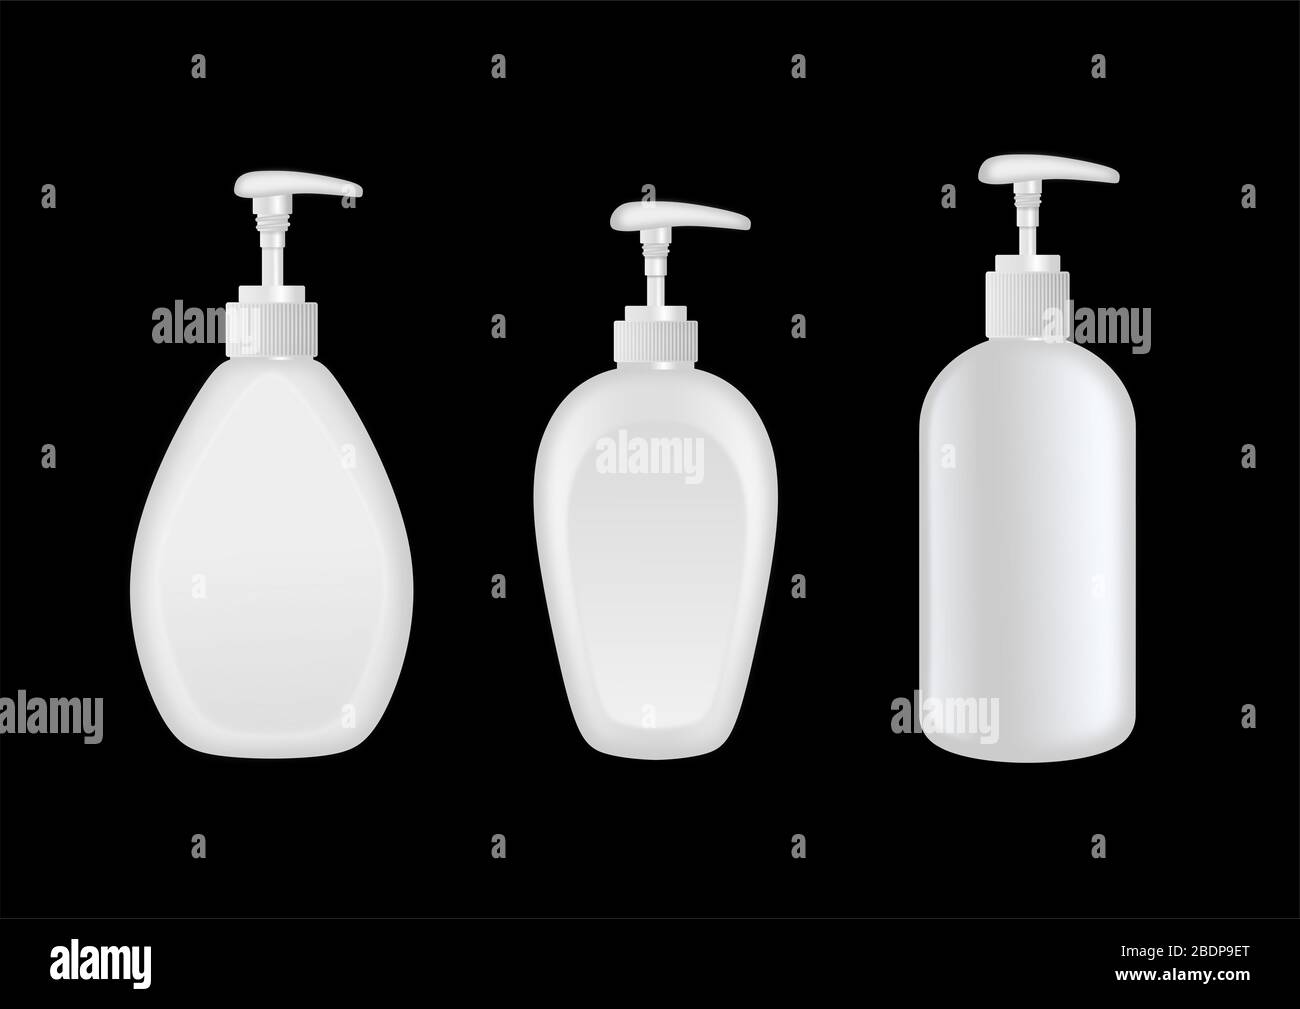 Jeu de bouteilles en plastique blanc avec distributeur. Solution désinfectante pour les mains ou savon liquide Banque D'Images